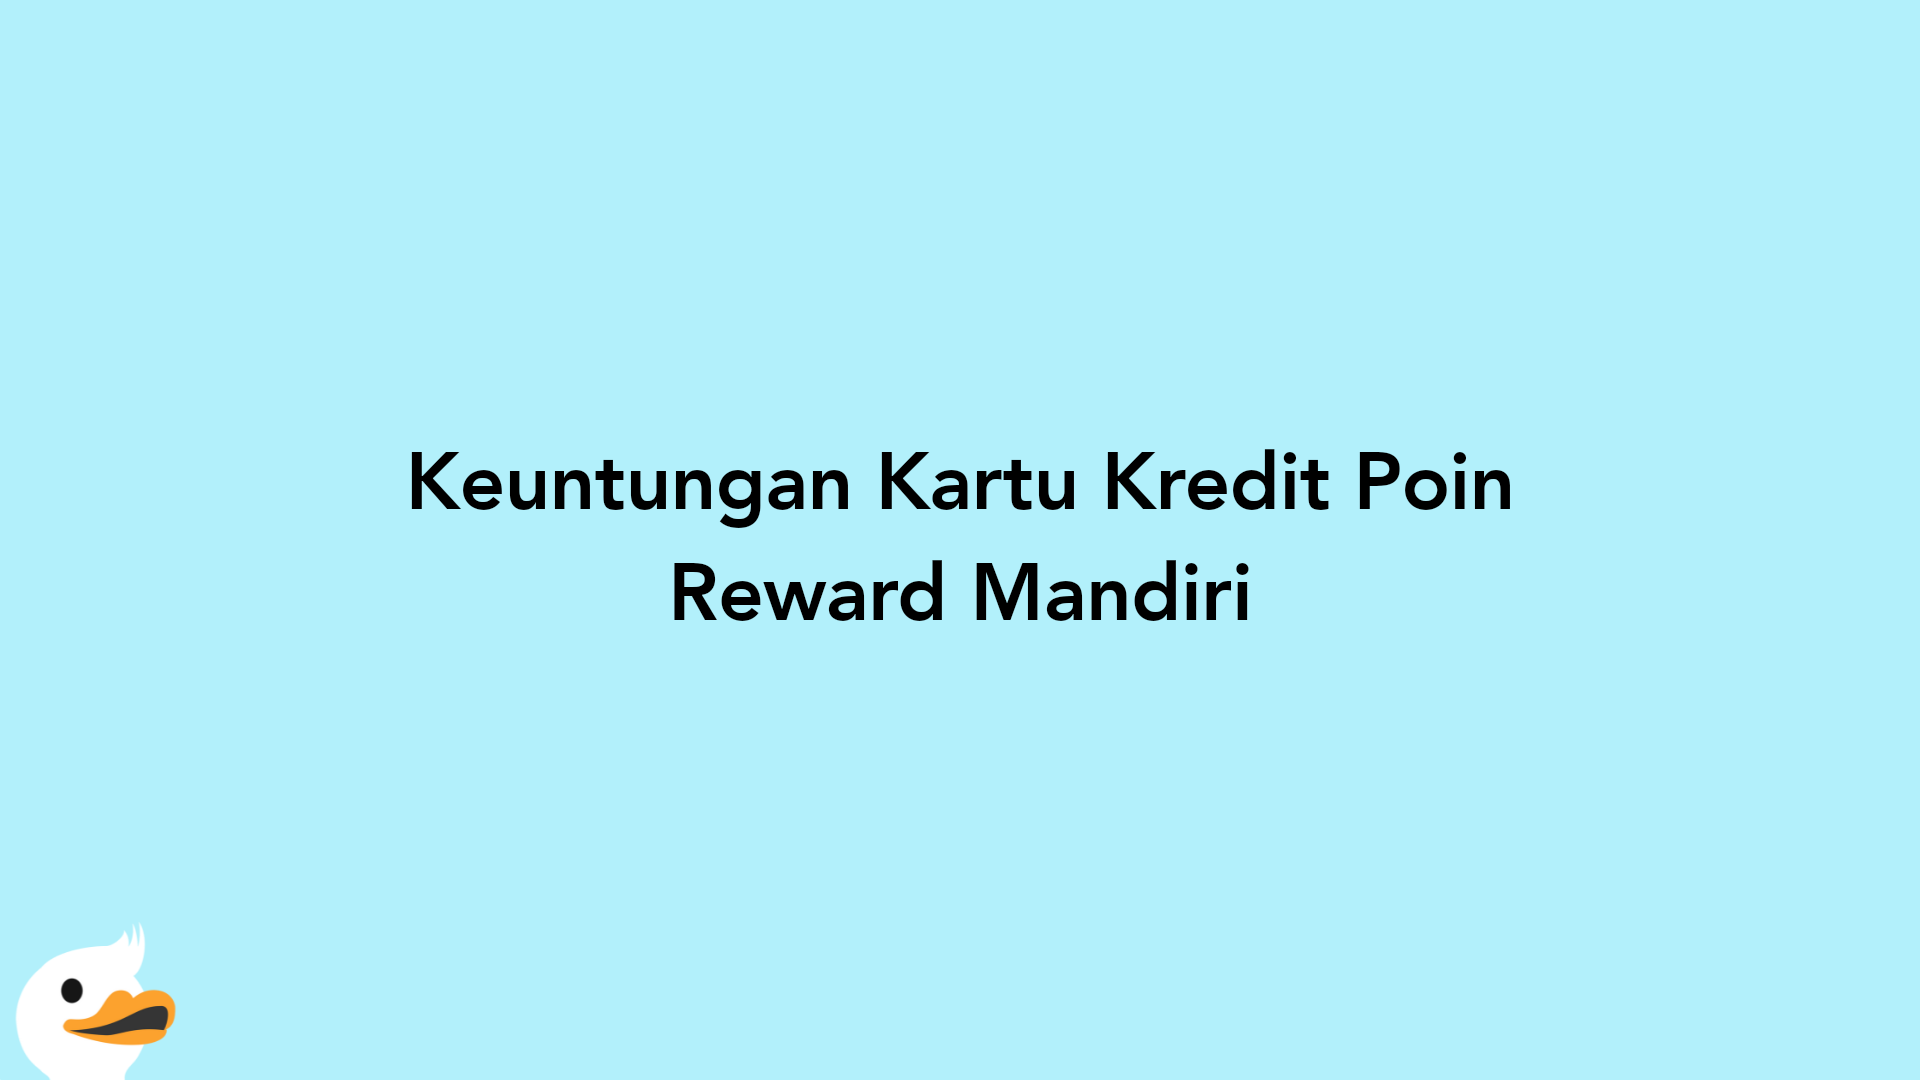 Keuntungan Kartu Kredit Poin Reward Mandiri